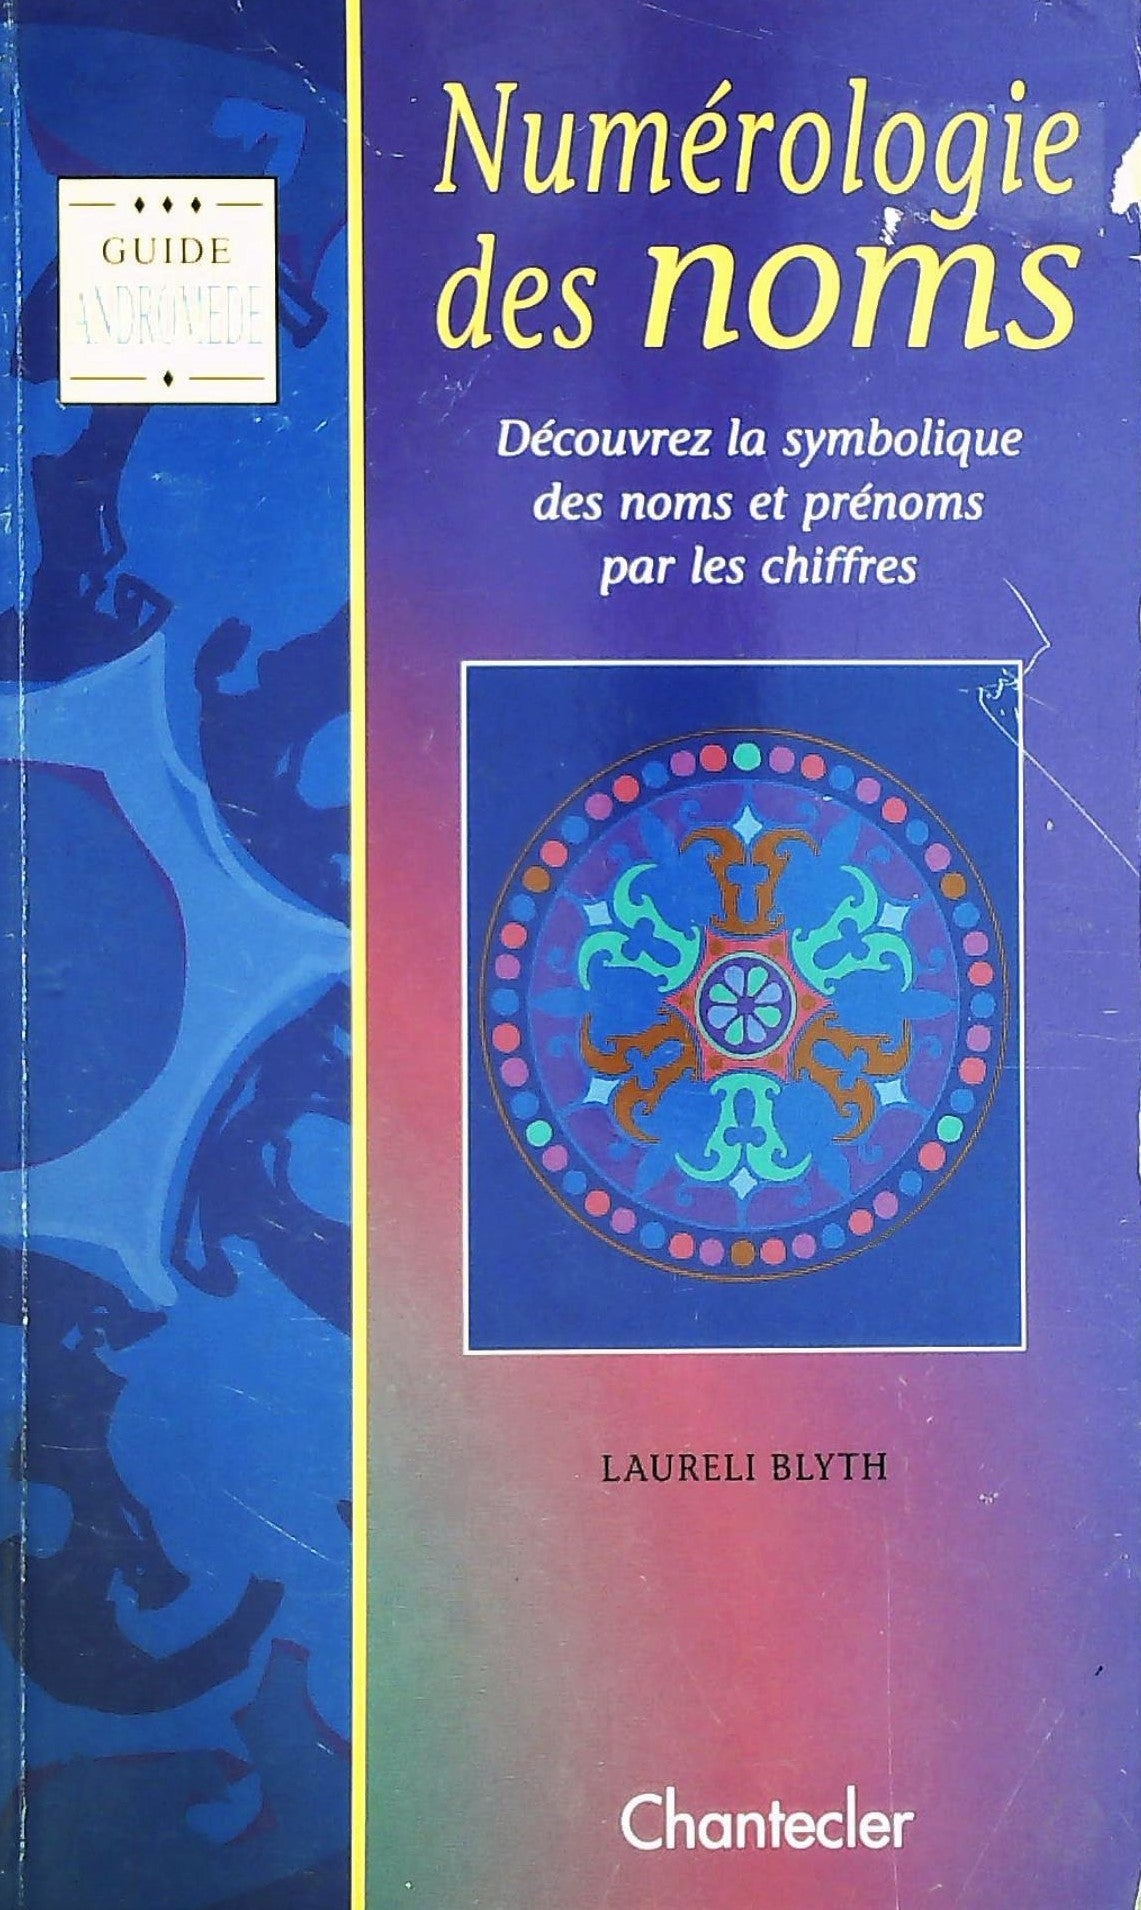 Livre ISBN 2803433133 Guide Andromède : Numérologie des noms : Découvrez la symbolique des noms et prénoms par les chiffres (Laureli Blyth)